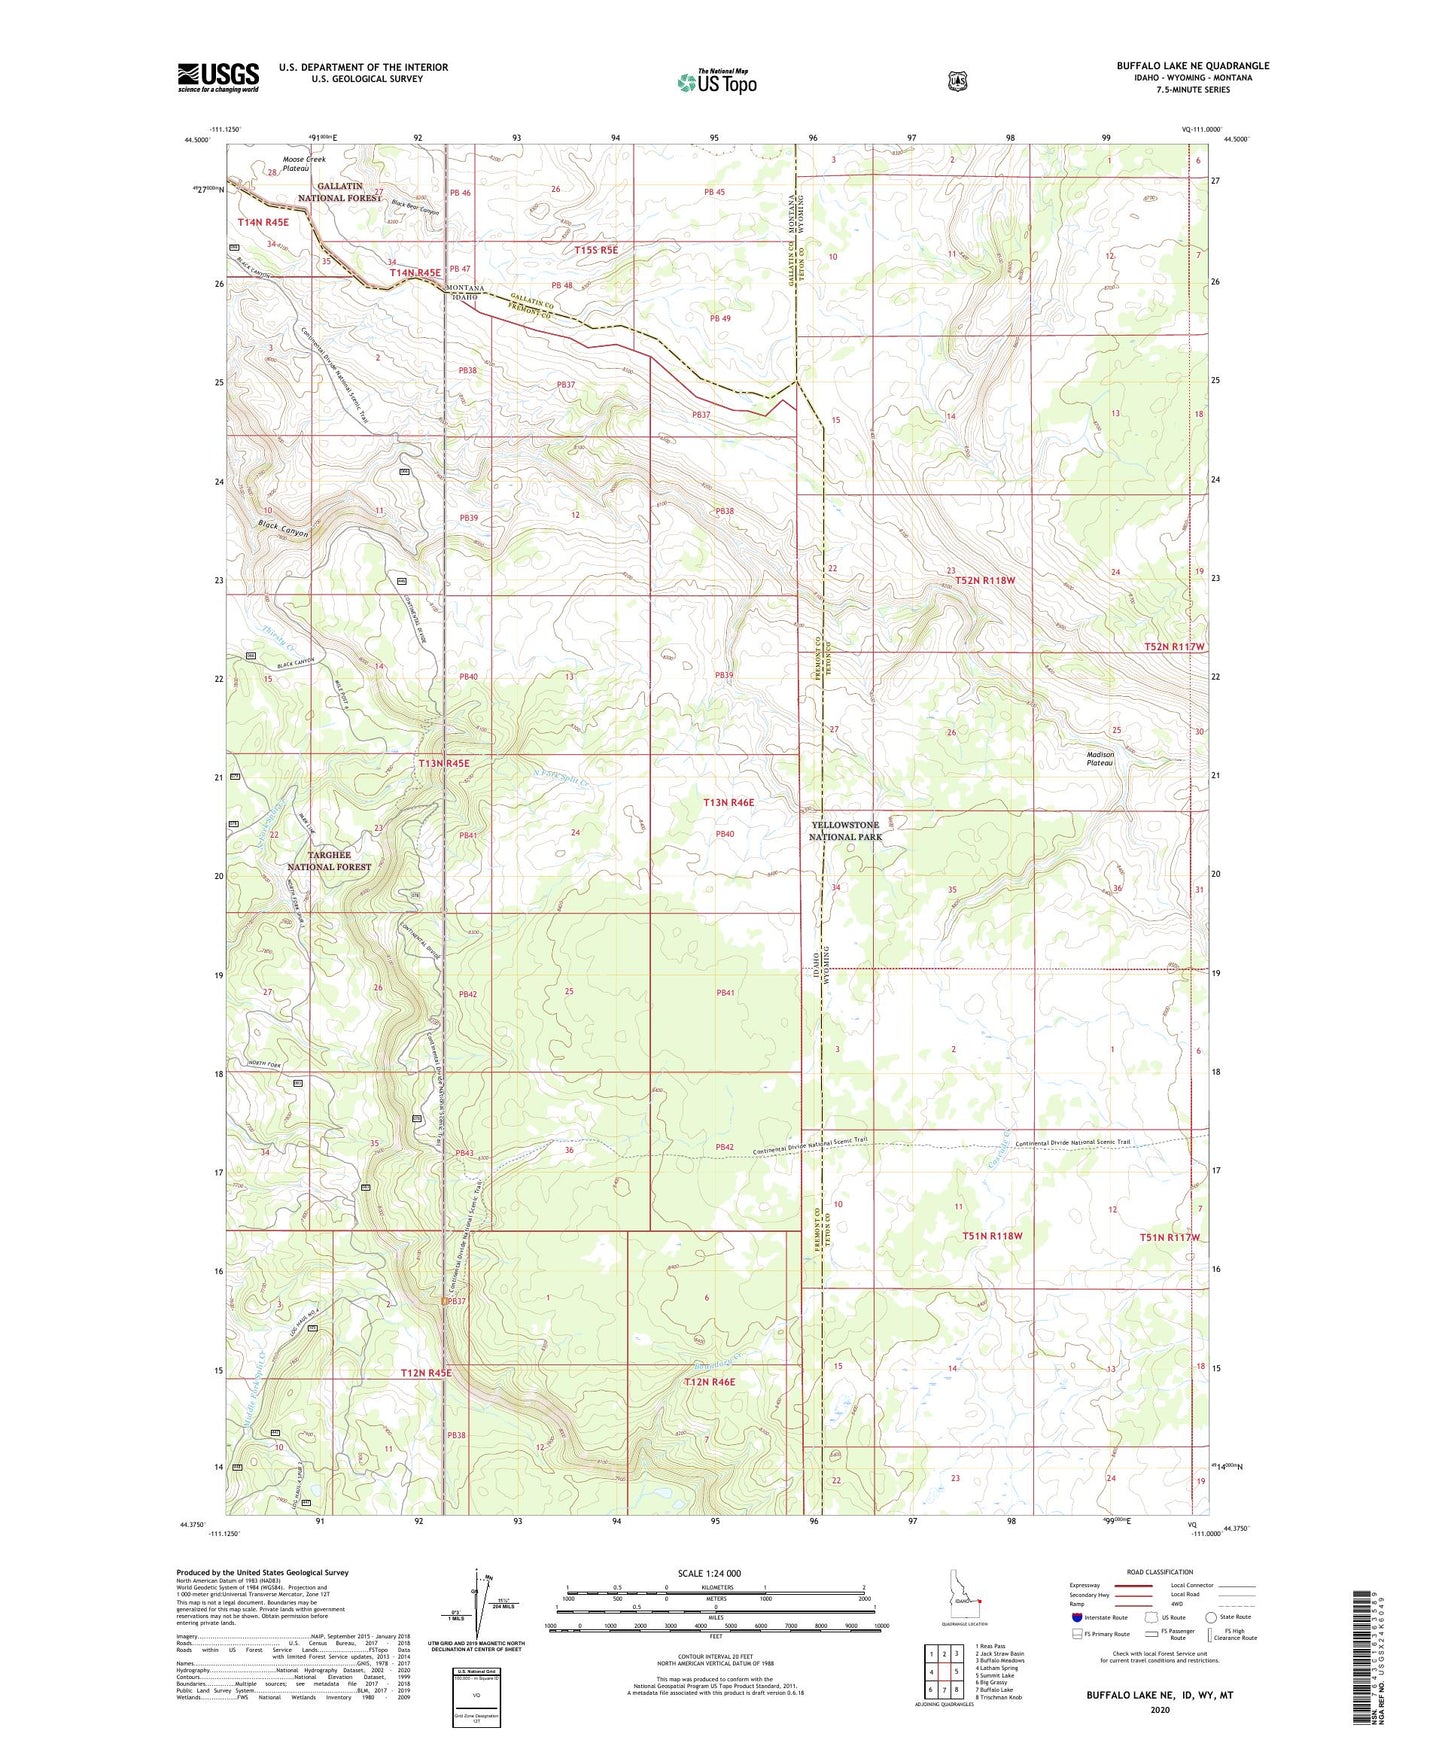 Buffalo Lake NE Idaho US Topo Map Image